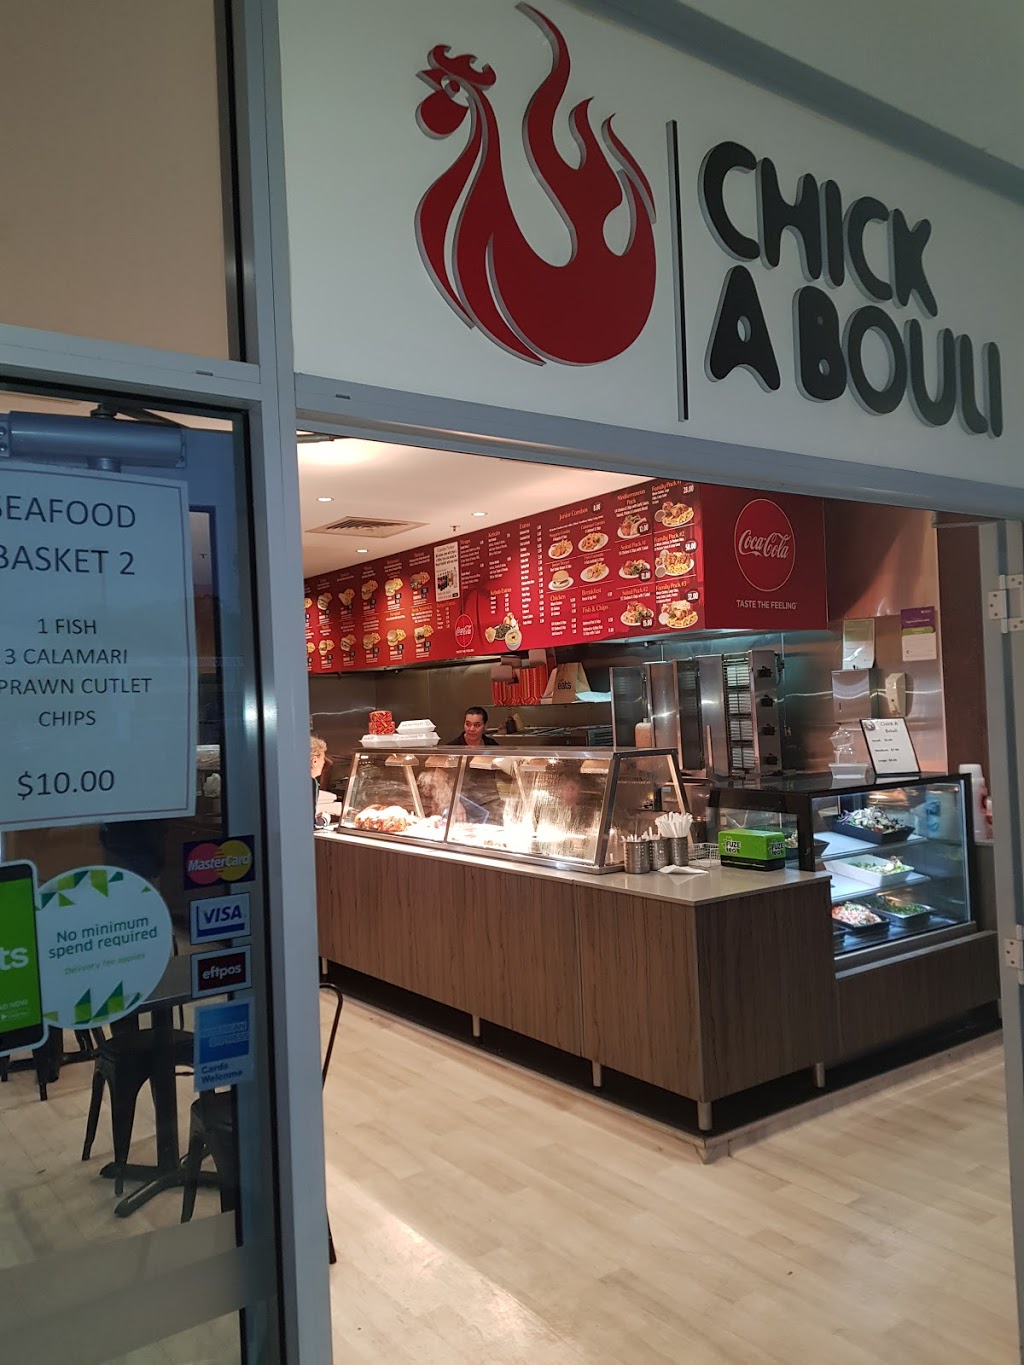 Chickabouli | meal takeaway | Greystanes NSW 2145, Australia